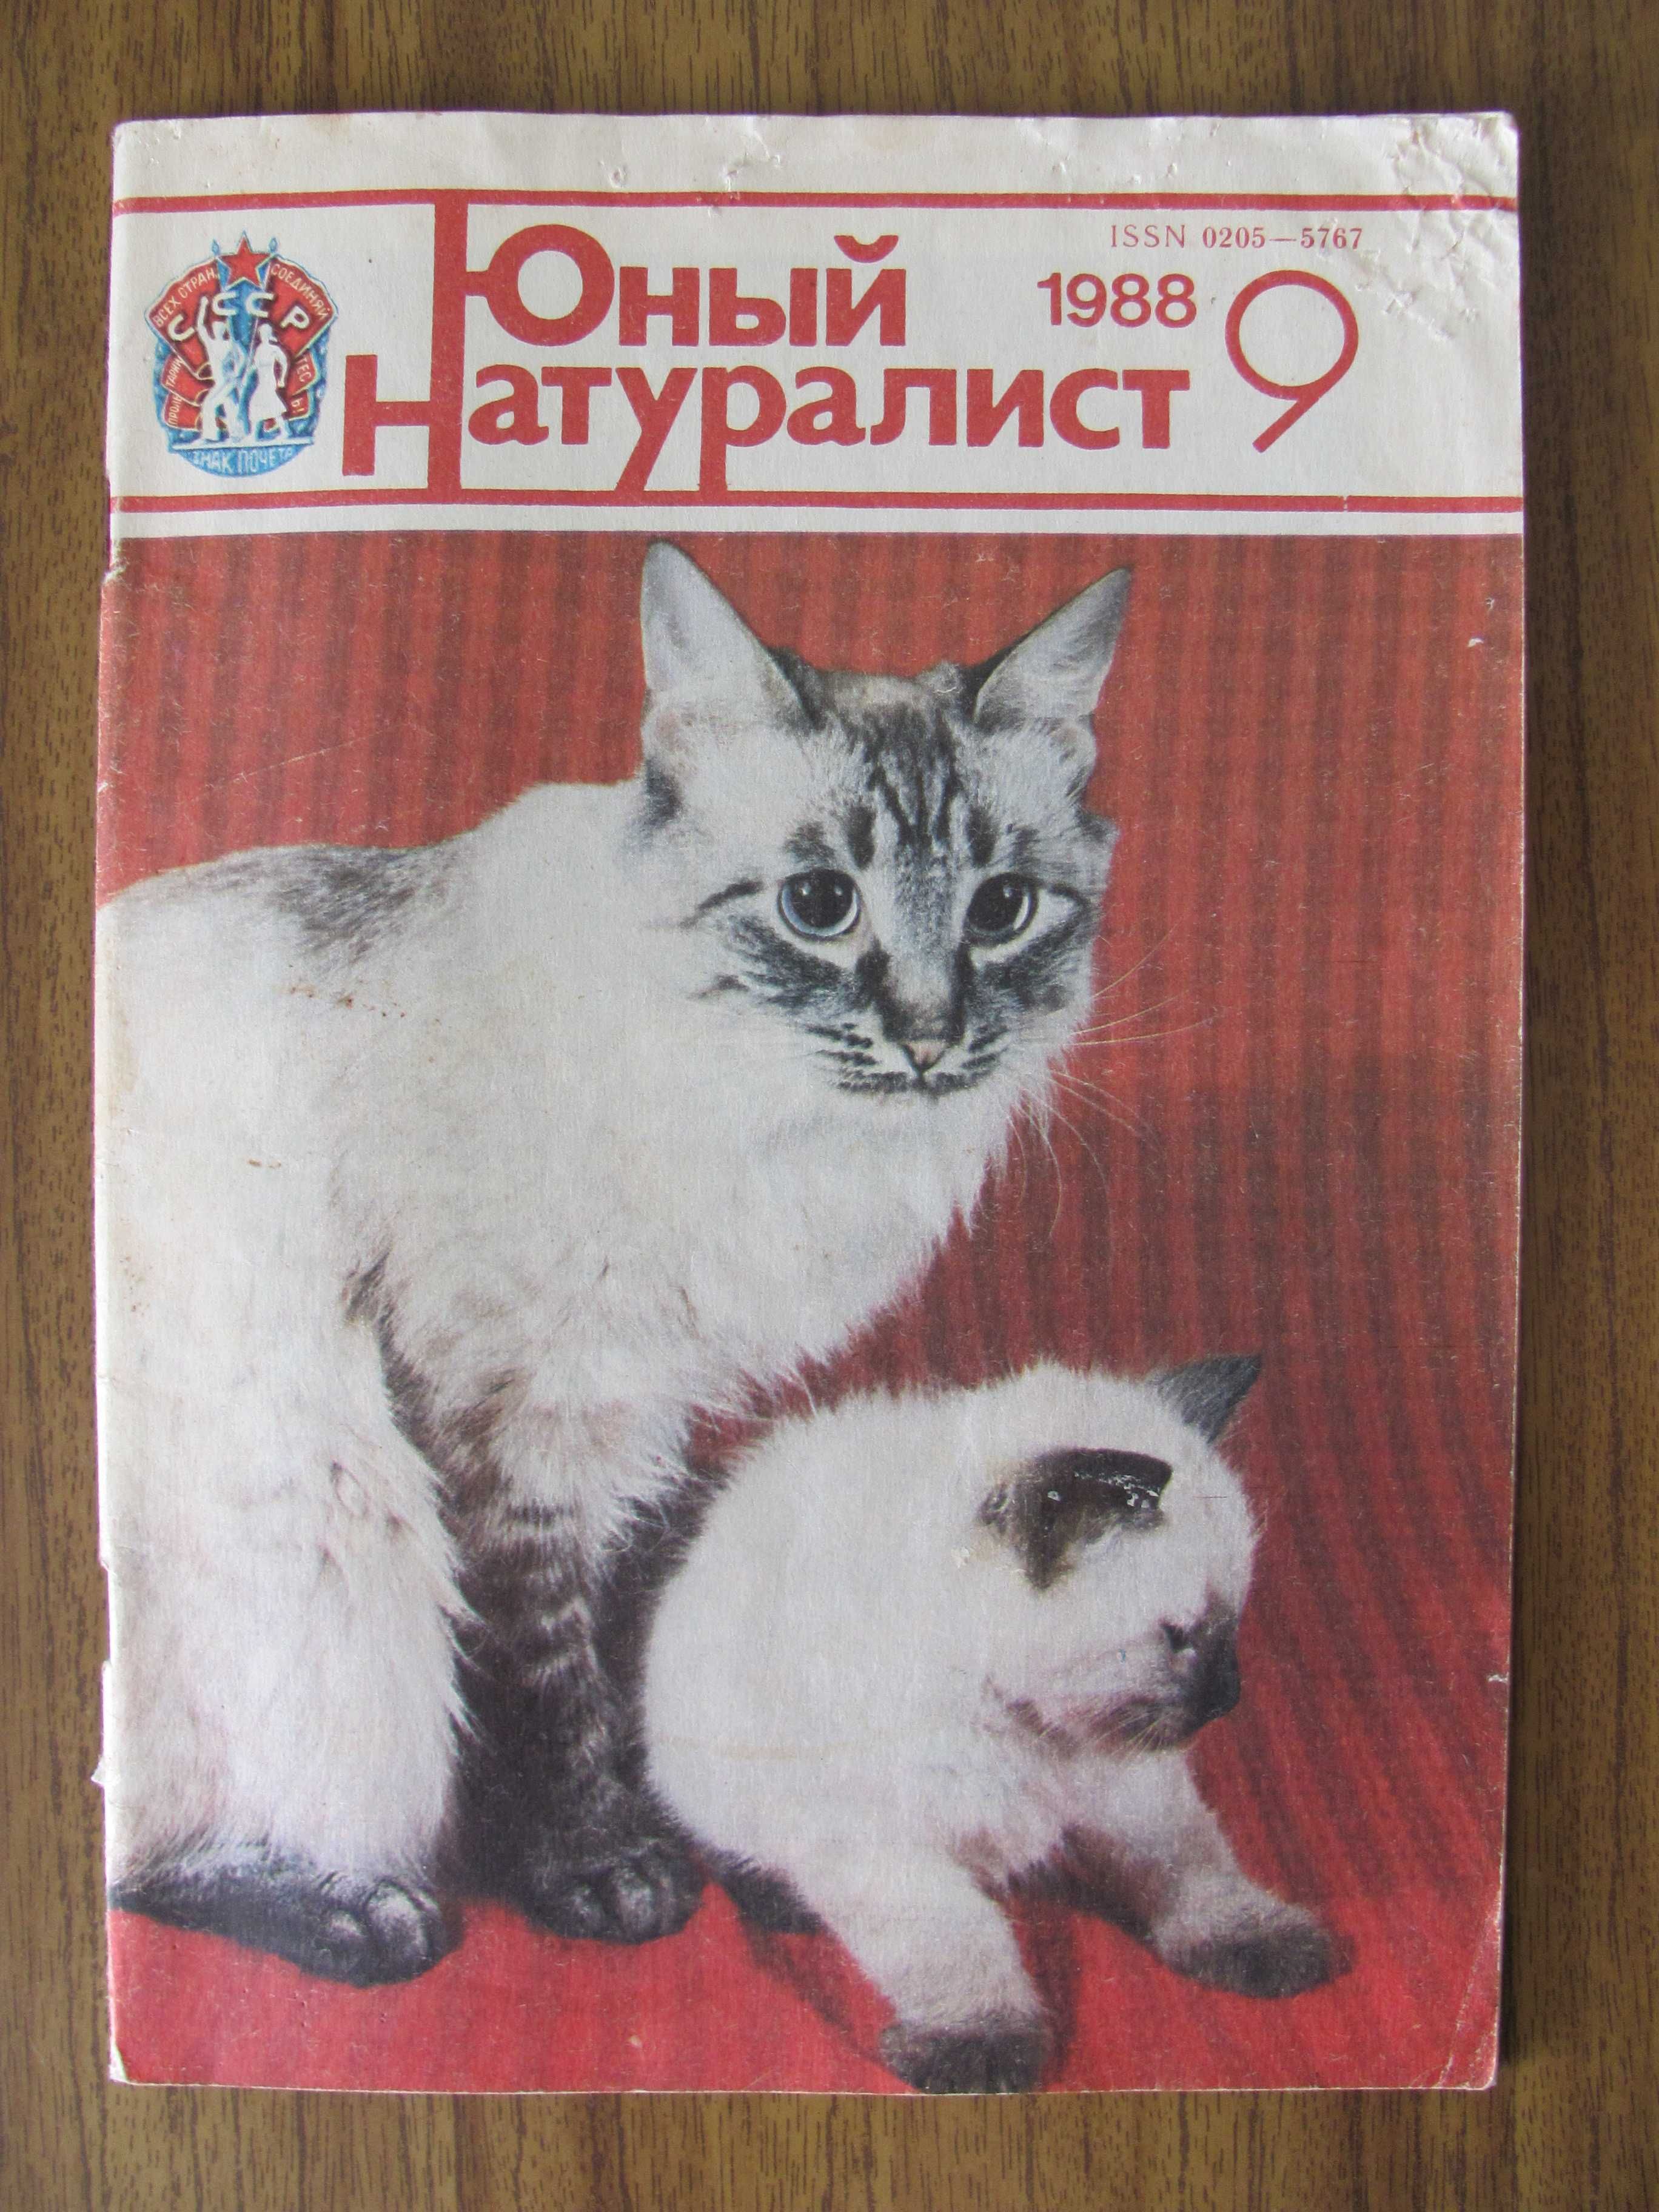 Журнал из СССР Юный натуралист 1988 г. выпуск № 9 – любимый с детства!